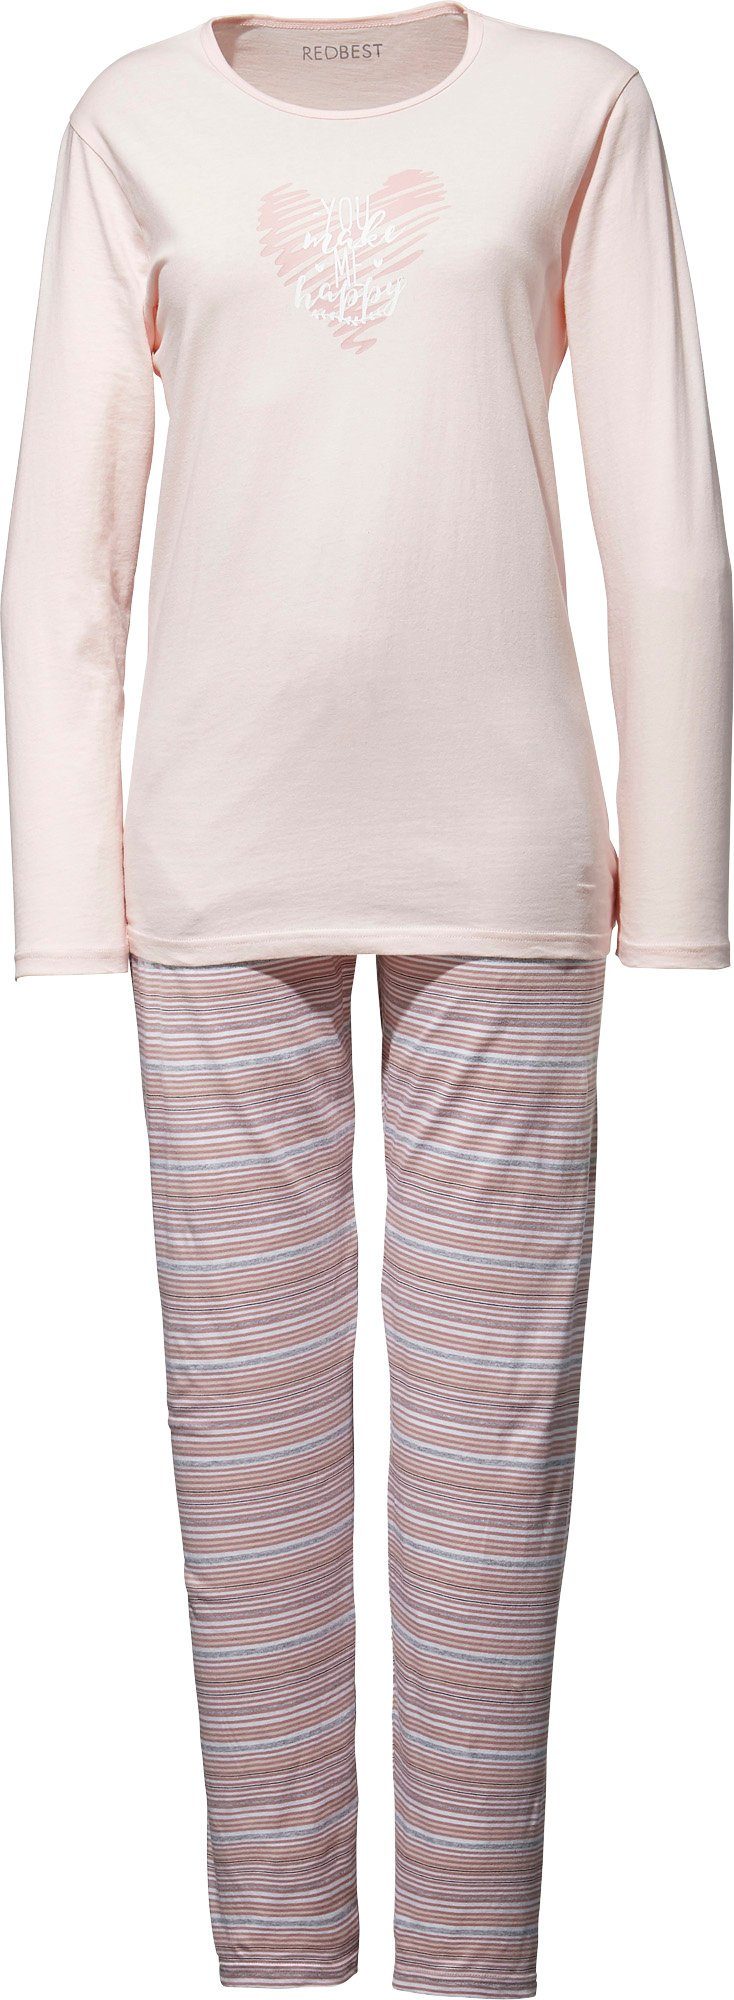 Pyjama Streifen REDBEST Damen-Schlafanzug Single-Jersey